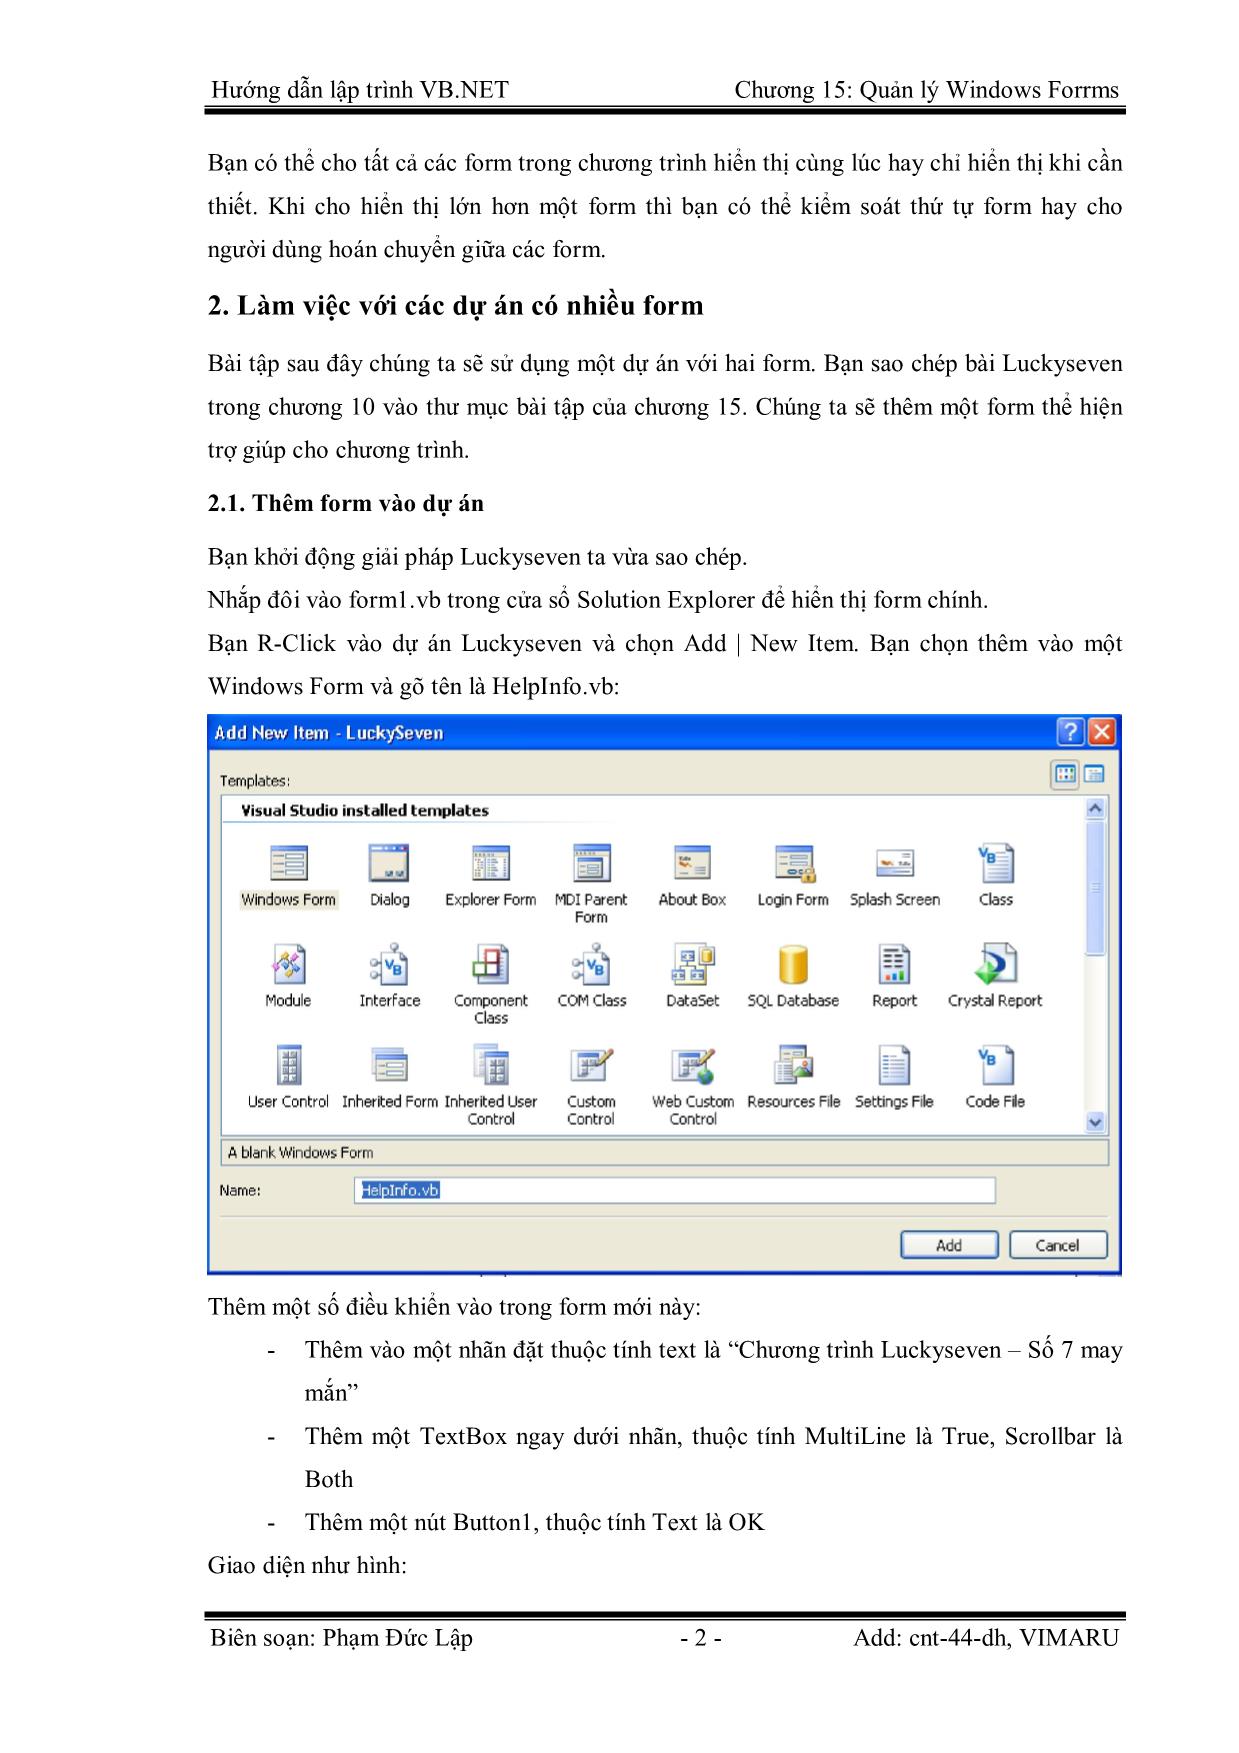 Giáo trình Hướng dẫn lập trình VB.NET - Chương 15: Quản lý Windows Forms - Phạm Đức Lập trang 2